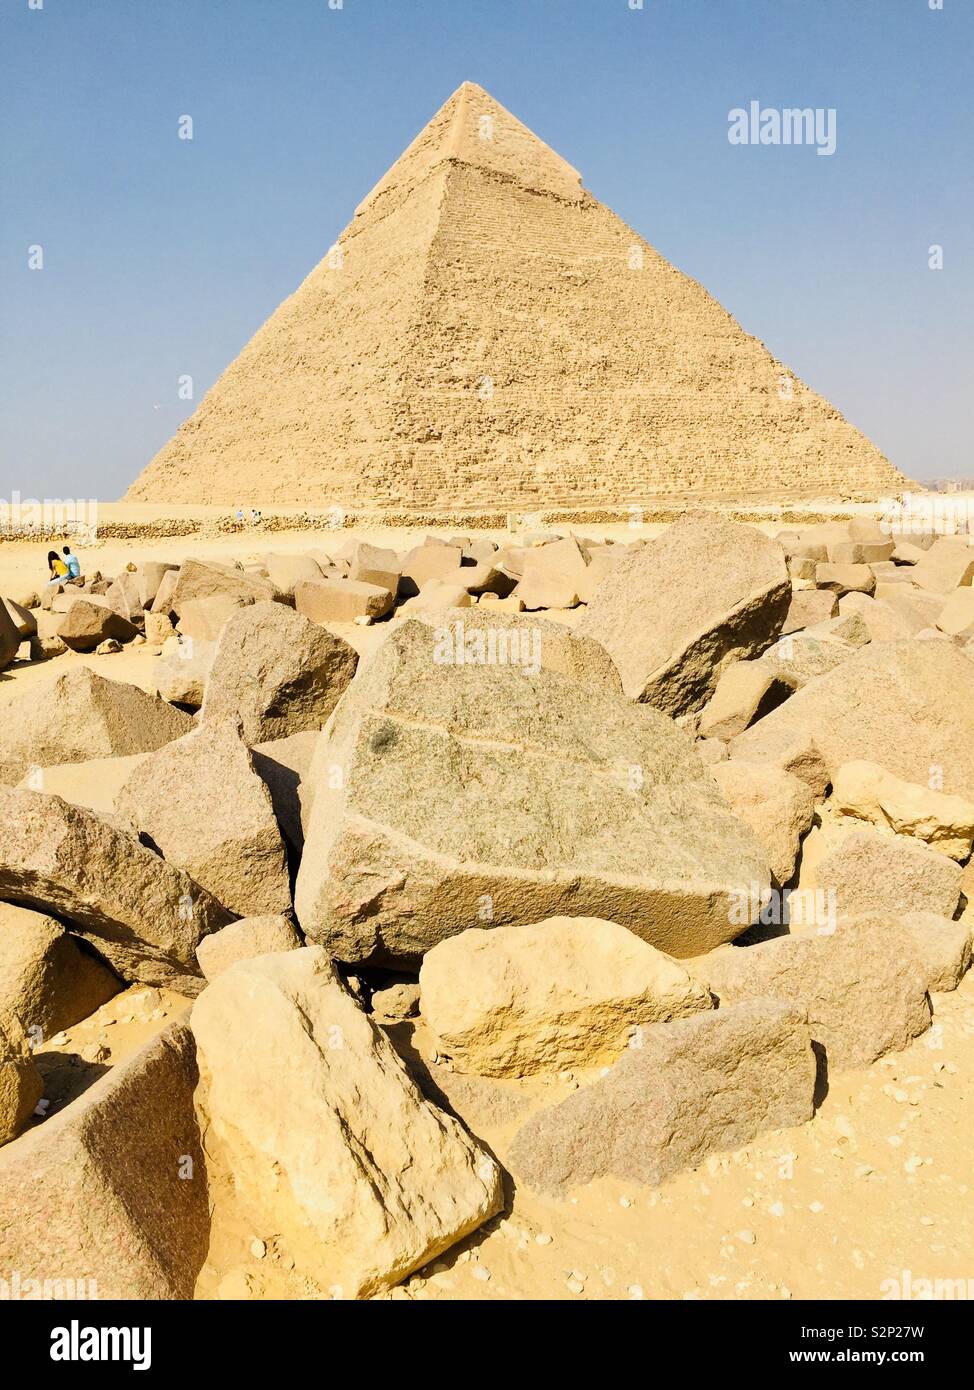 Pyramiden, die einmal mit weißem Marmor & Albaster bedeckt waren. Gebaut mit dem fortschrittlichsten Denken der Zeit, zeigt dieses Erdgeschoss, wo Arbeiter gelebt hätten Stockfoto